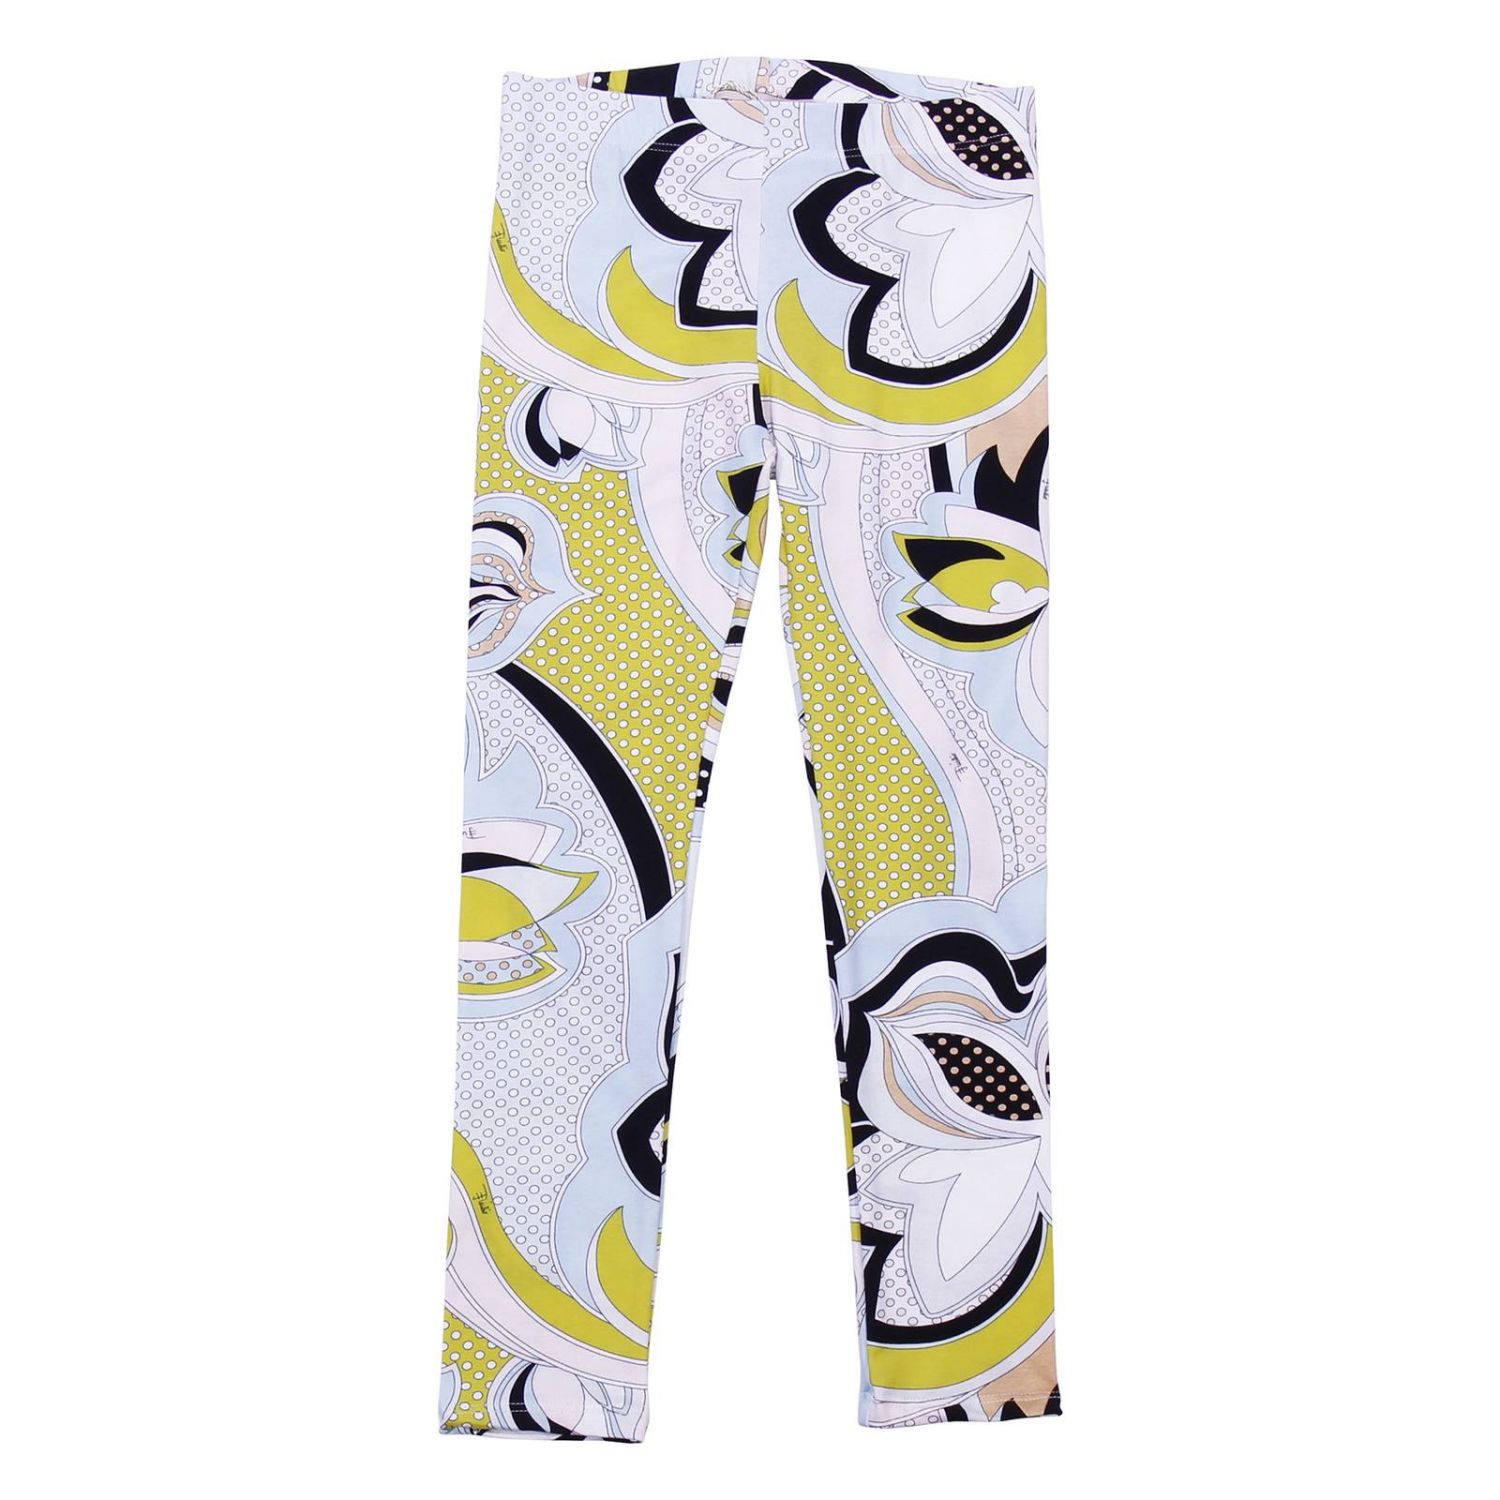 Emilio Pucci Outlet: pants for girls - Multicolor | Emilio Pucci pants ...